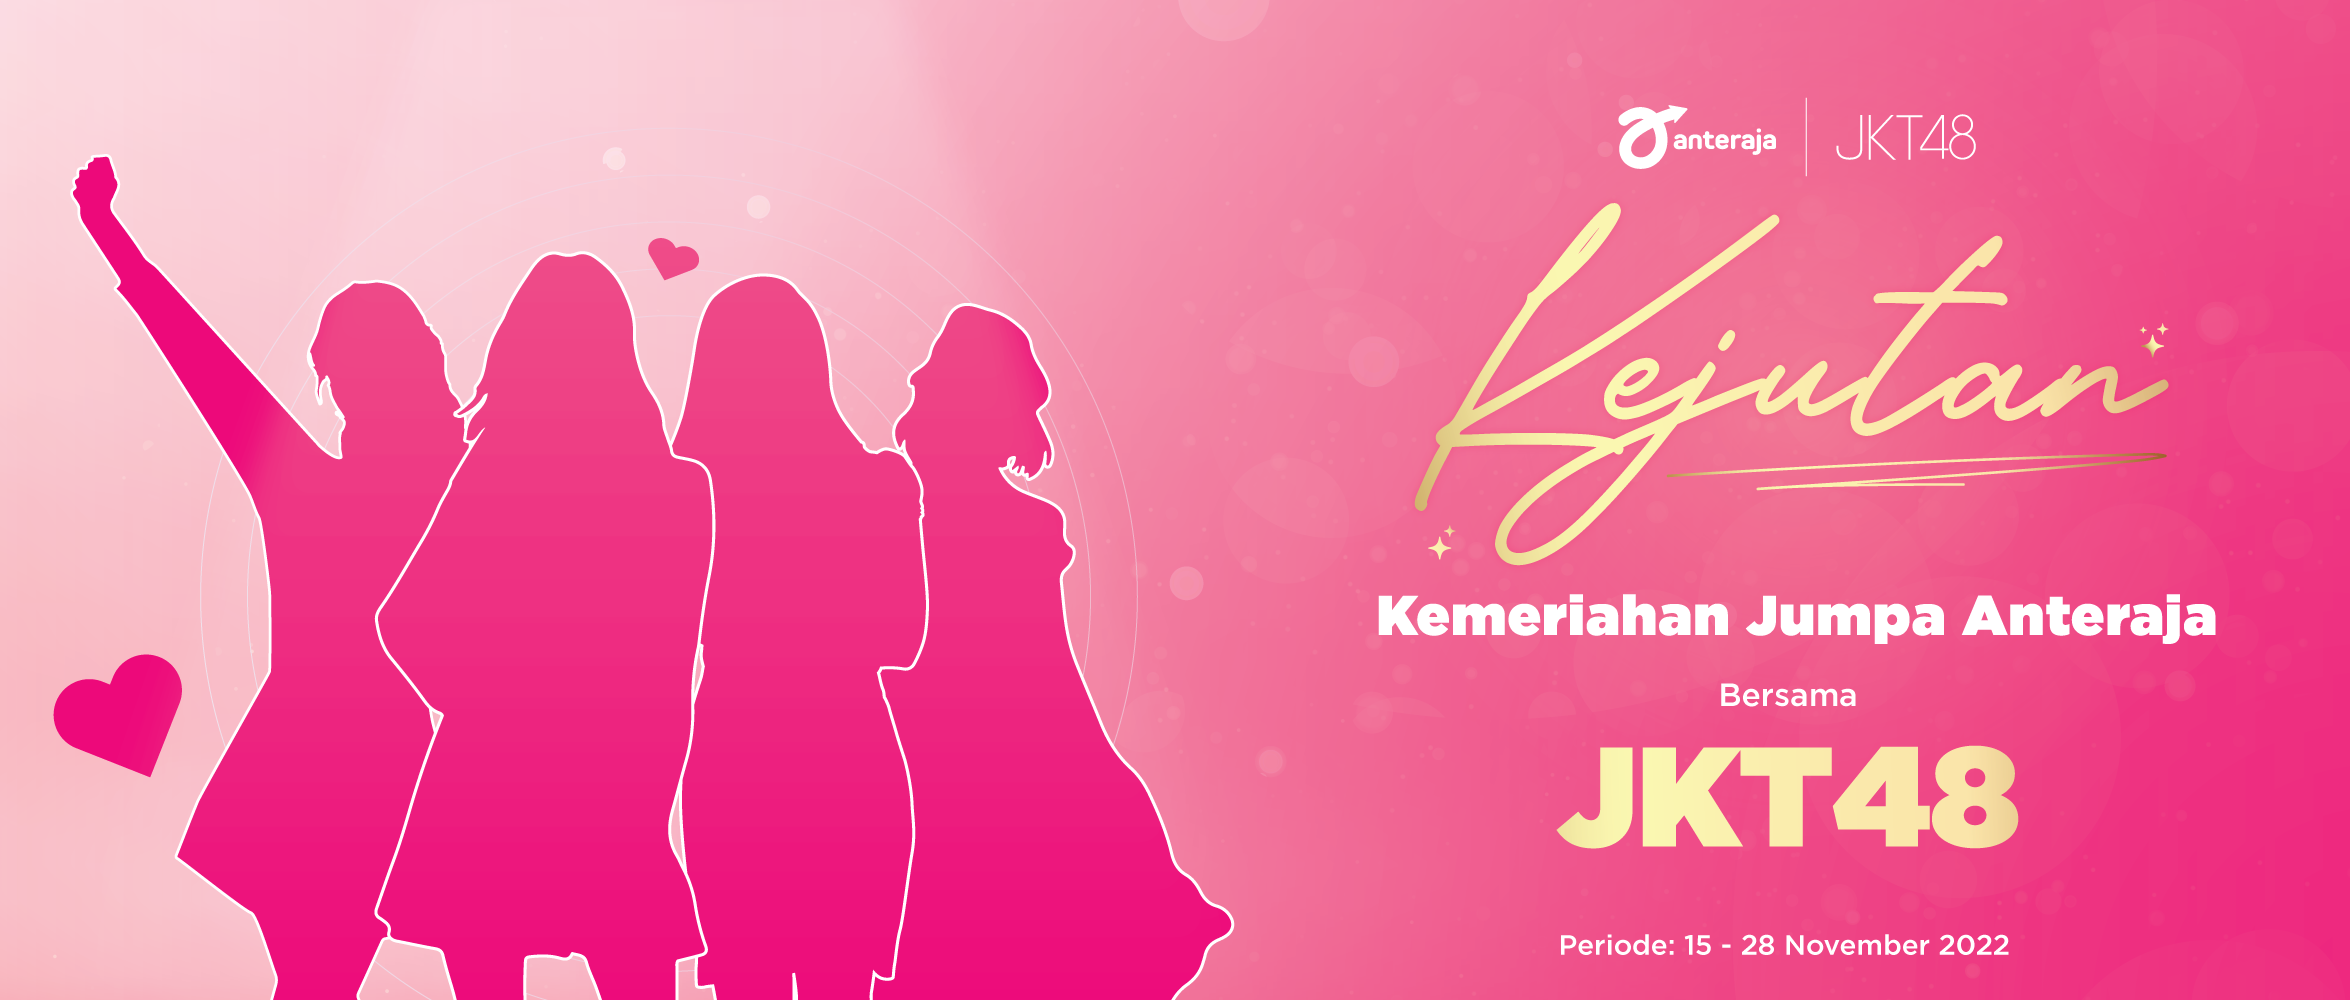 Event KEJUTAN untuk Kamu Semua!, Kemeriahan Jumpa Anteraja Bersama JKT48